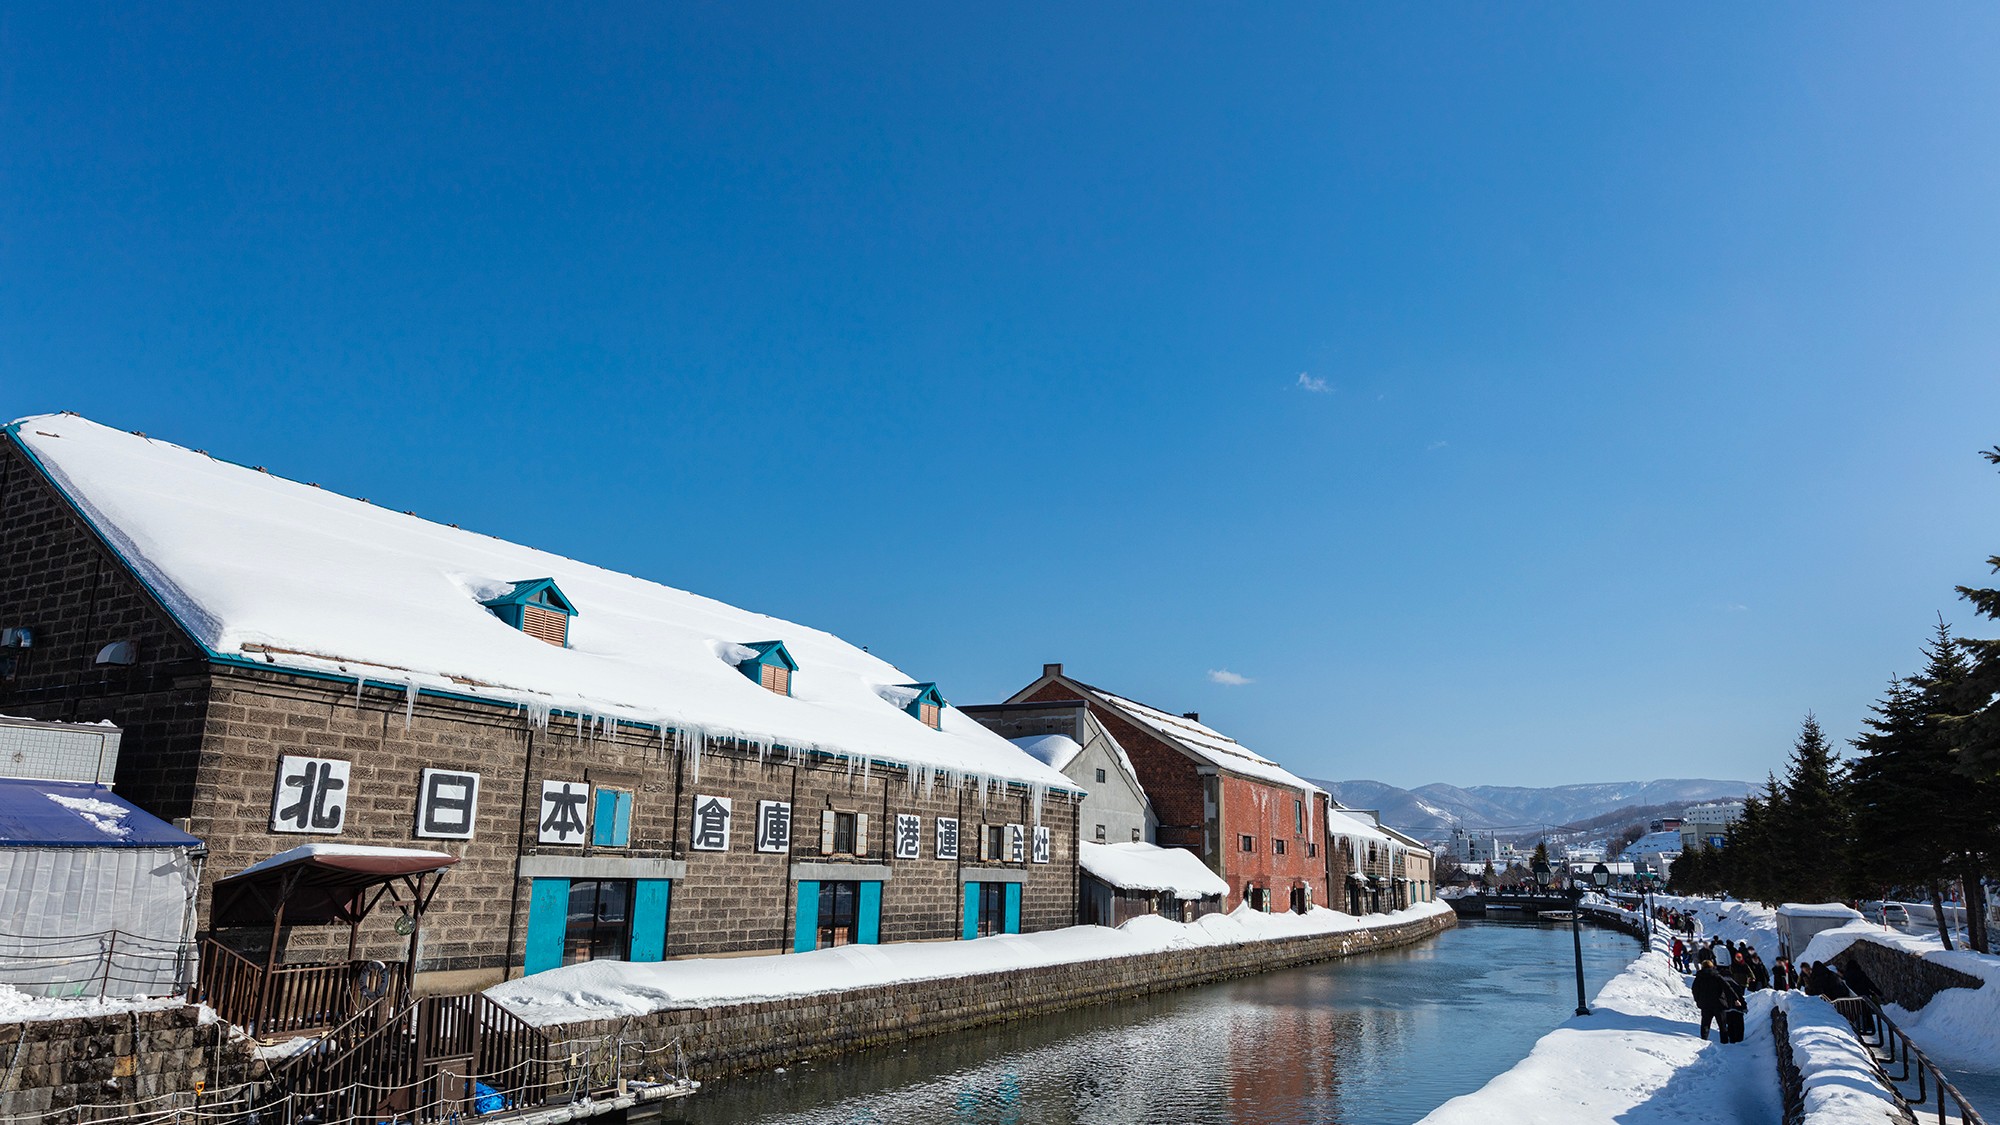 【小樽運河：冬】冬はレンガに積もった雪景色が北国らしさを感じさせます。